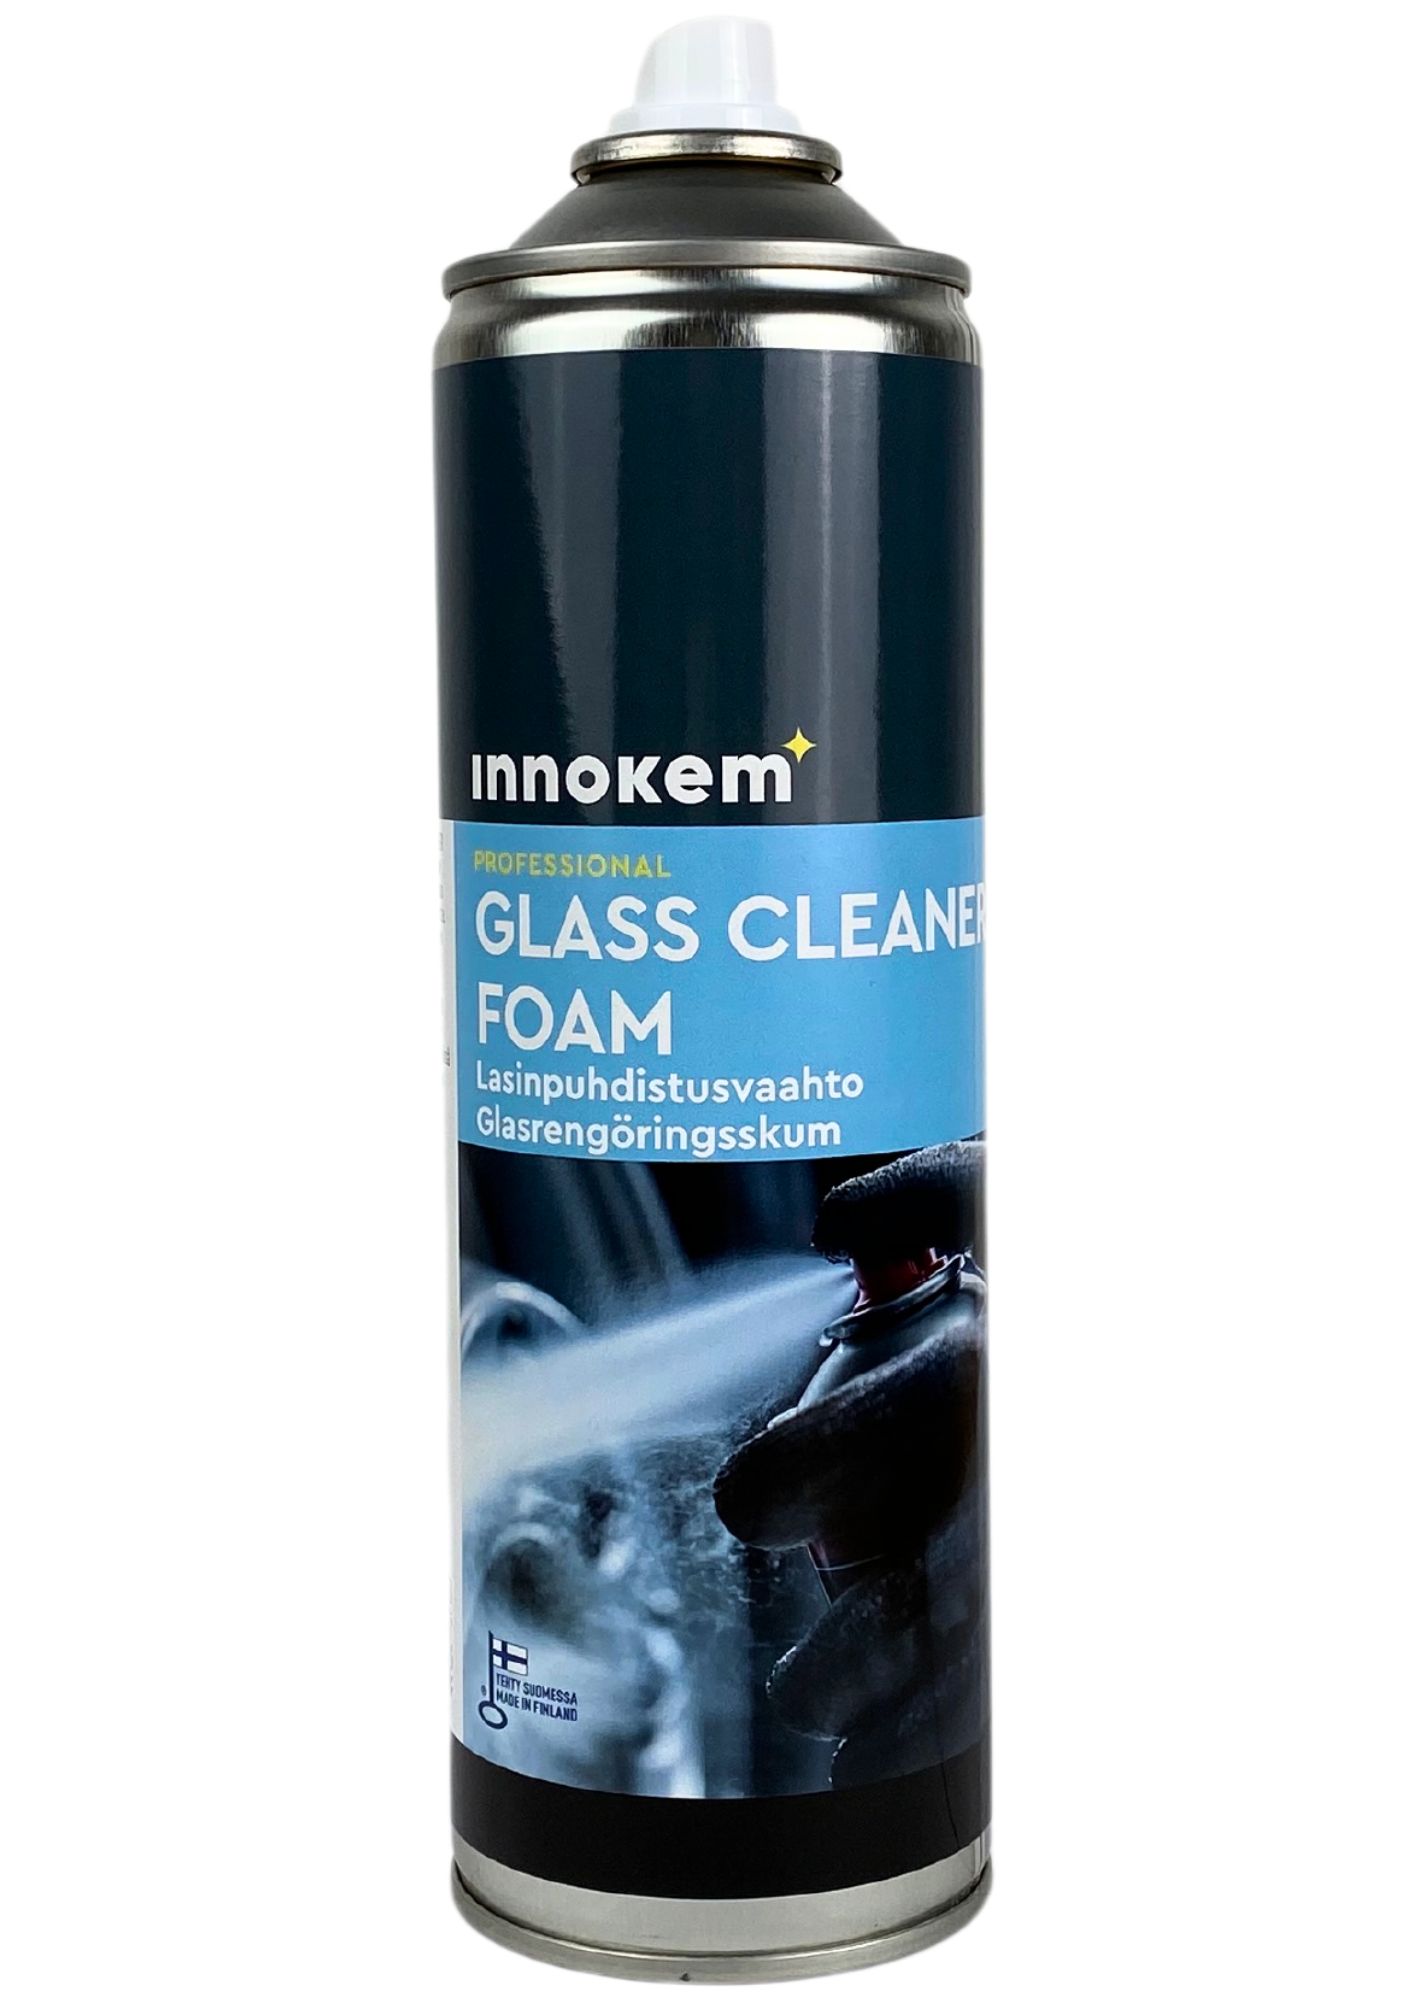 innokem glass cleaner foam 500ml